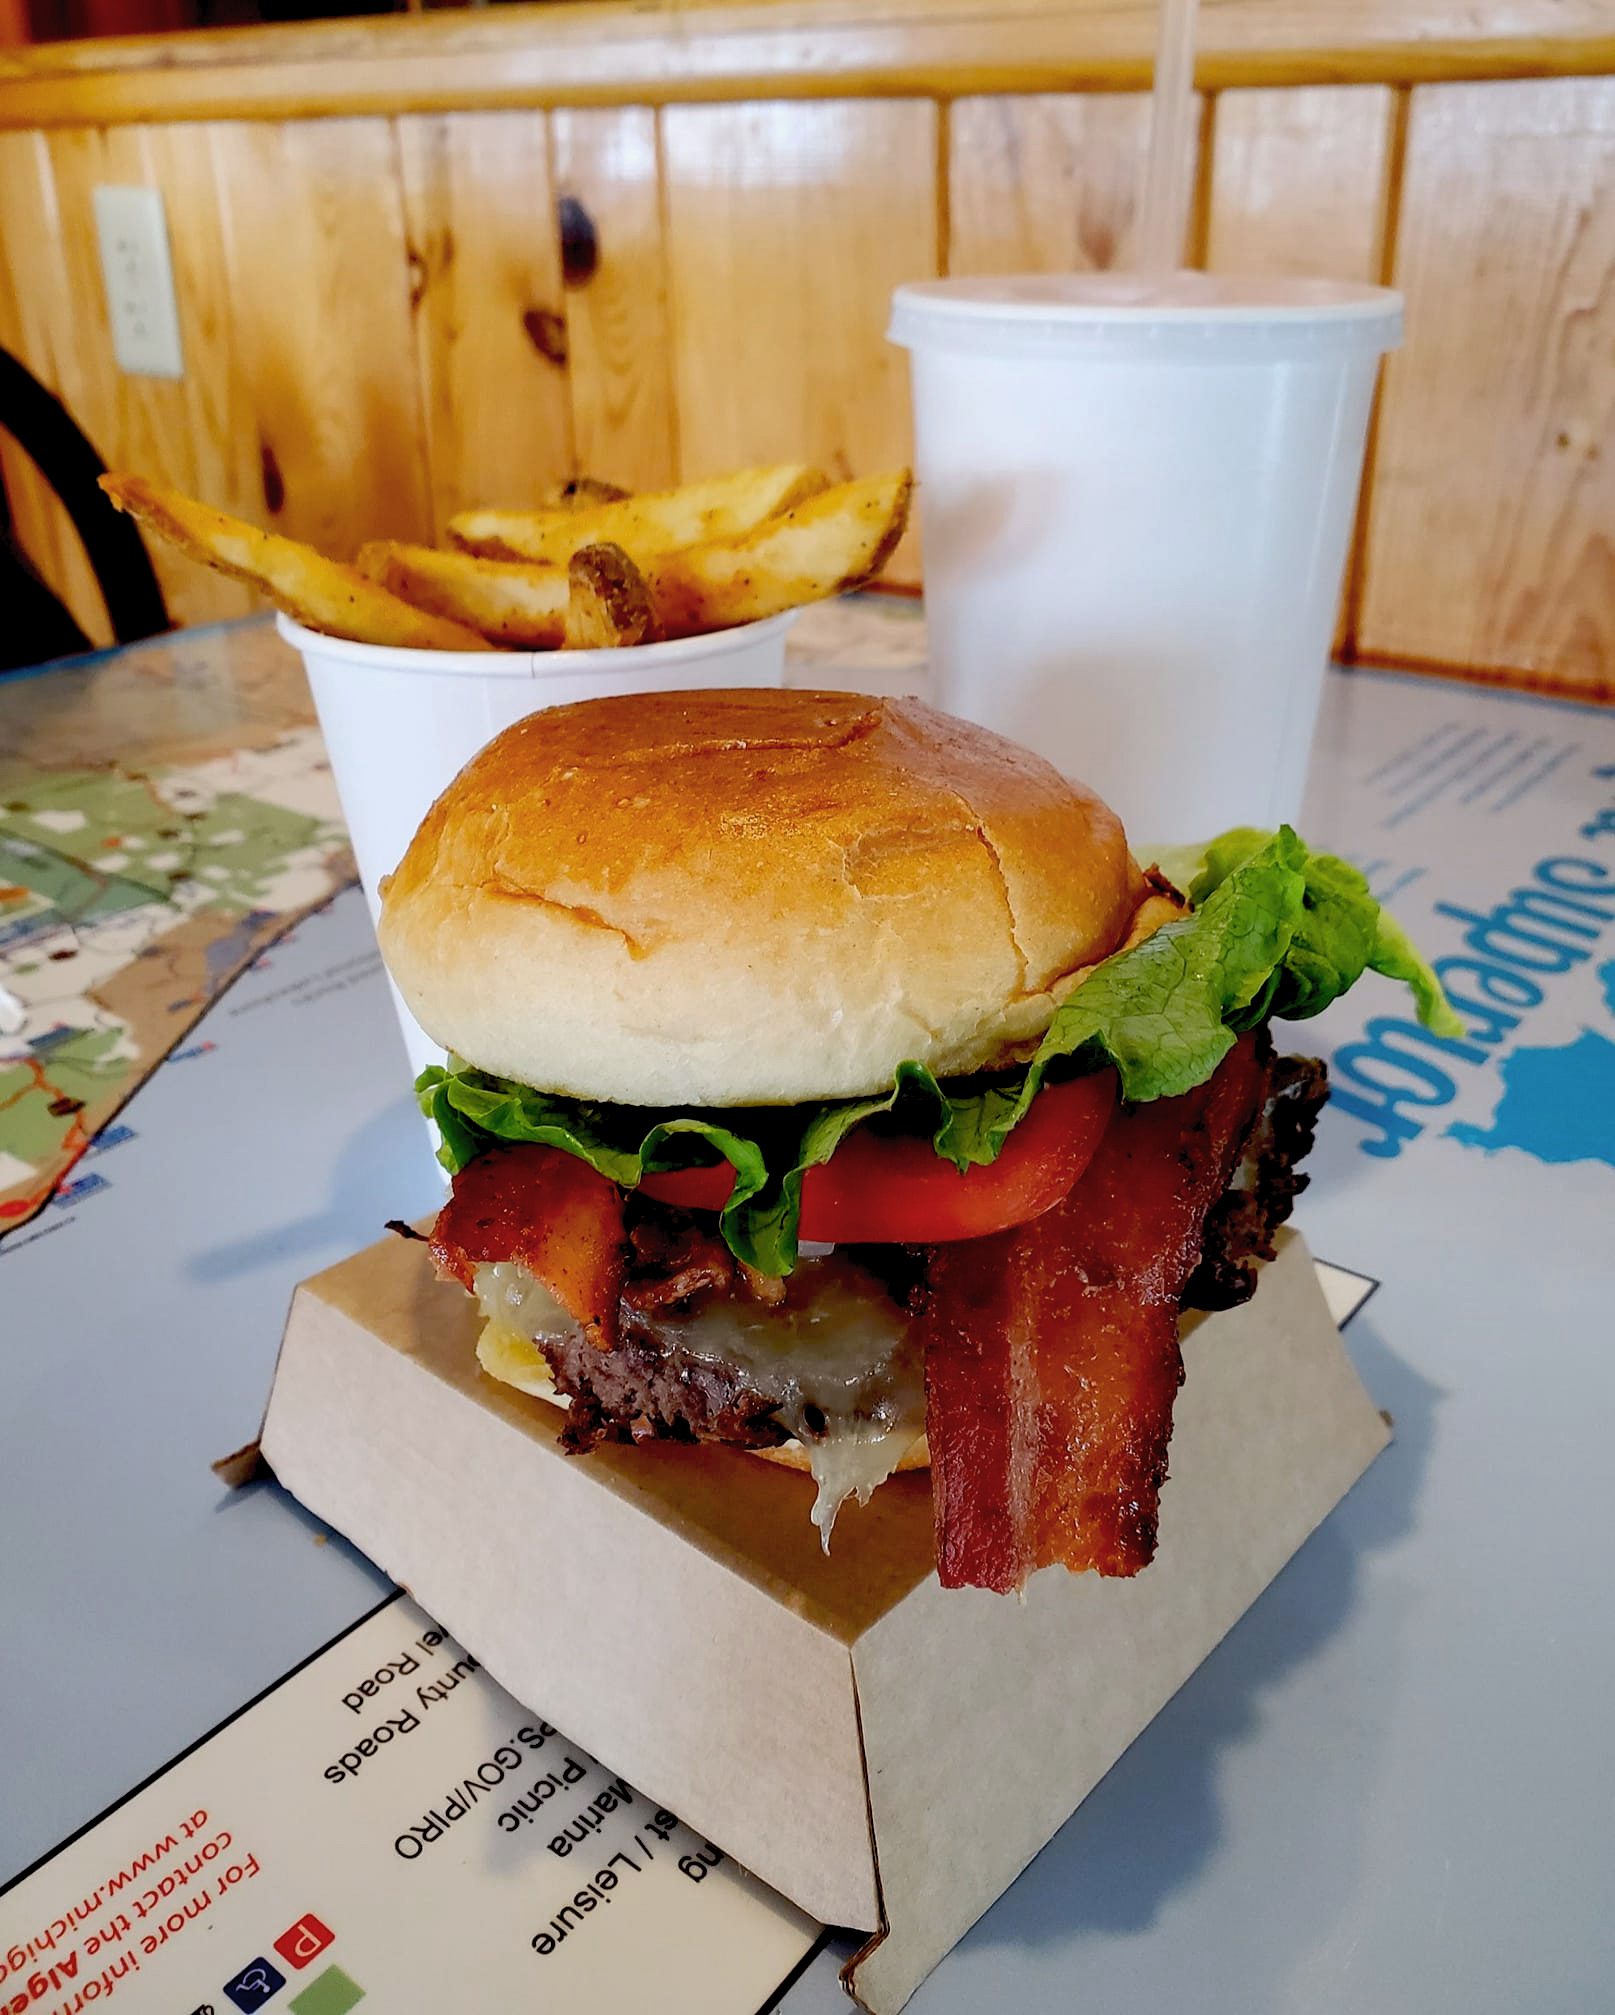 https://ehburger.com/wp-content/uploads/2022/06/Bison-Burger.jpg